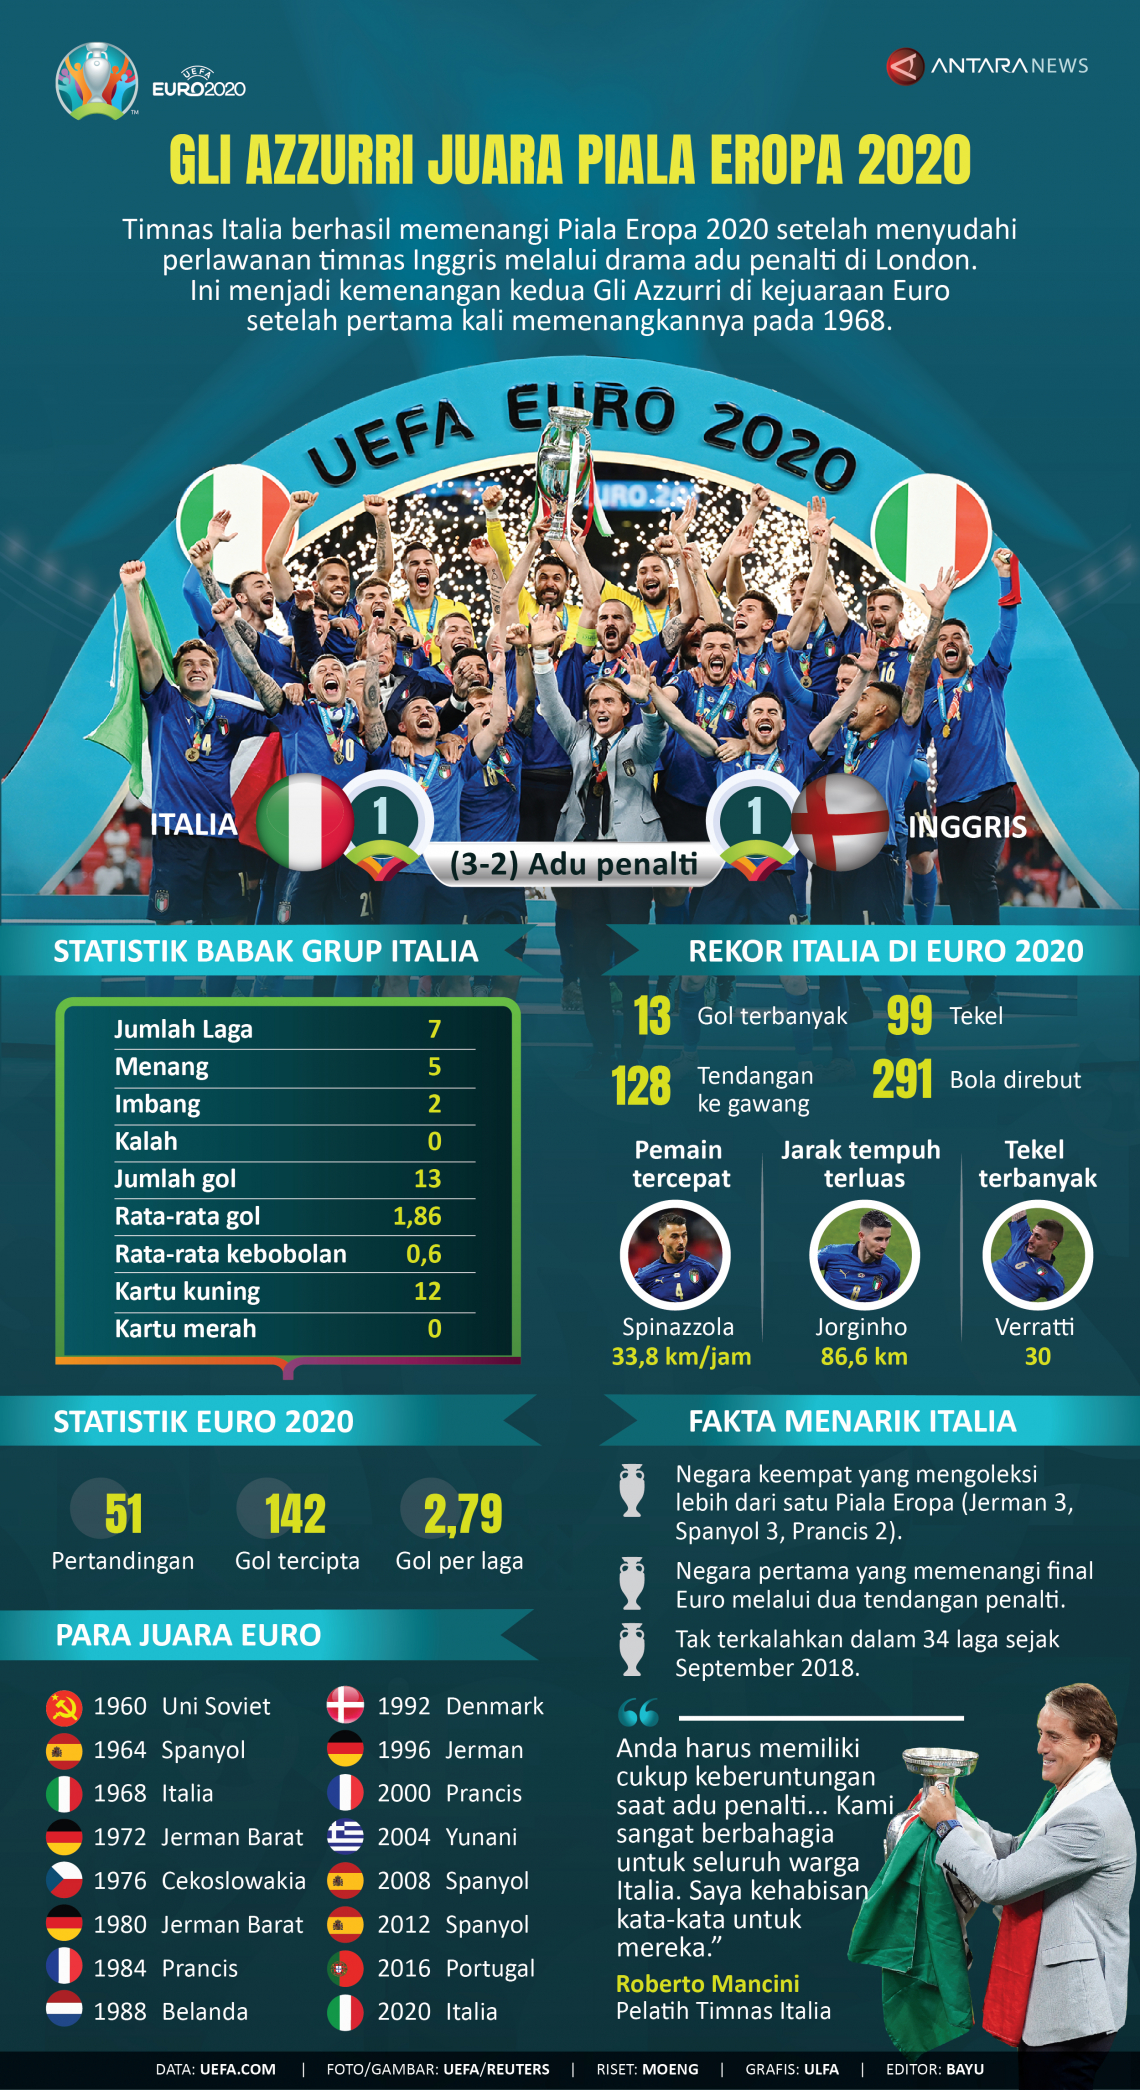 INFOGRAFIS: Gli Azzurri Juara Piala Eropa 2020